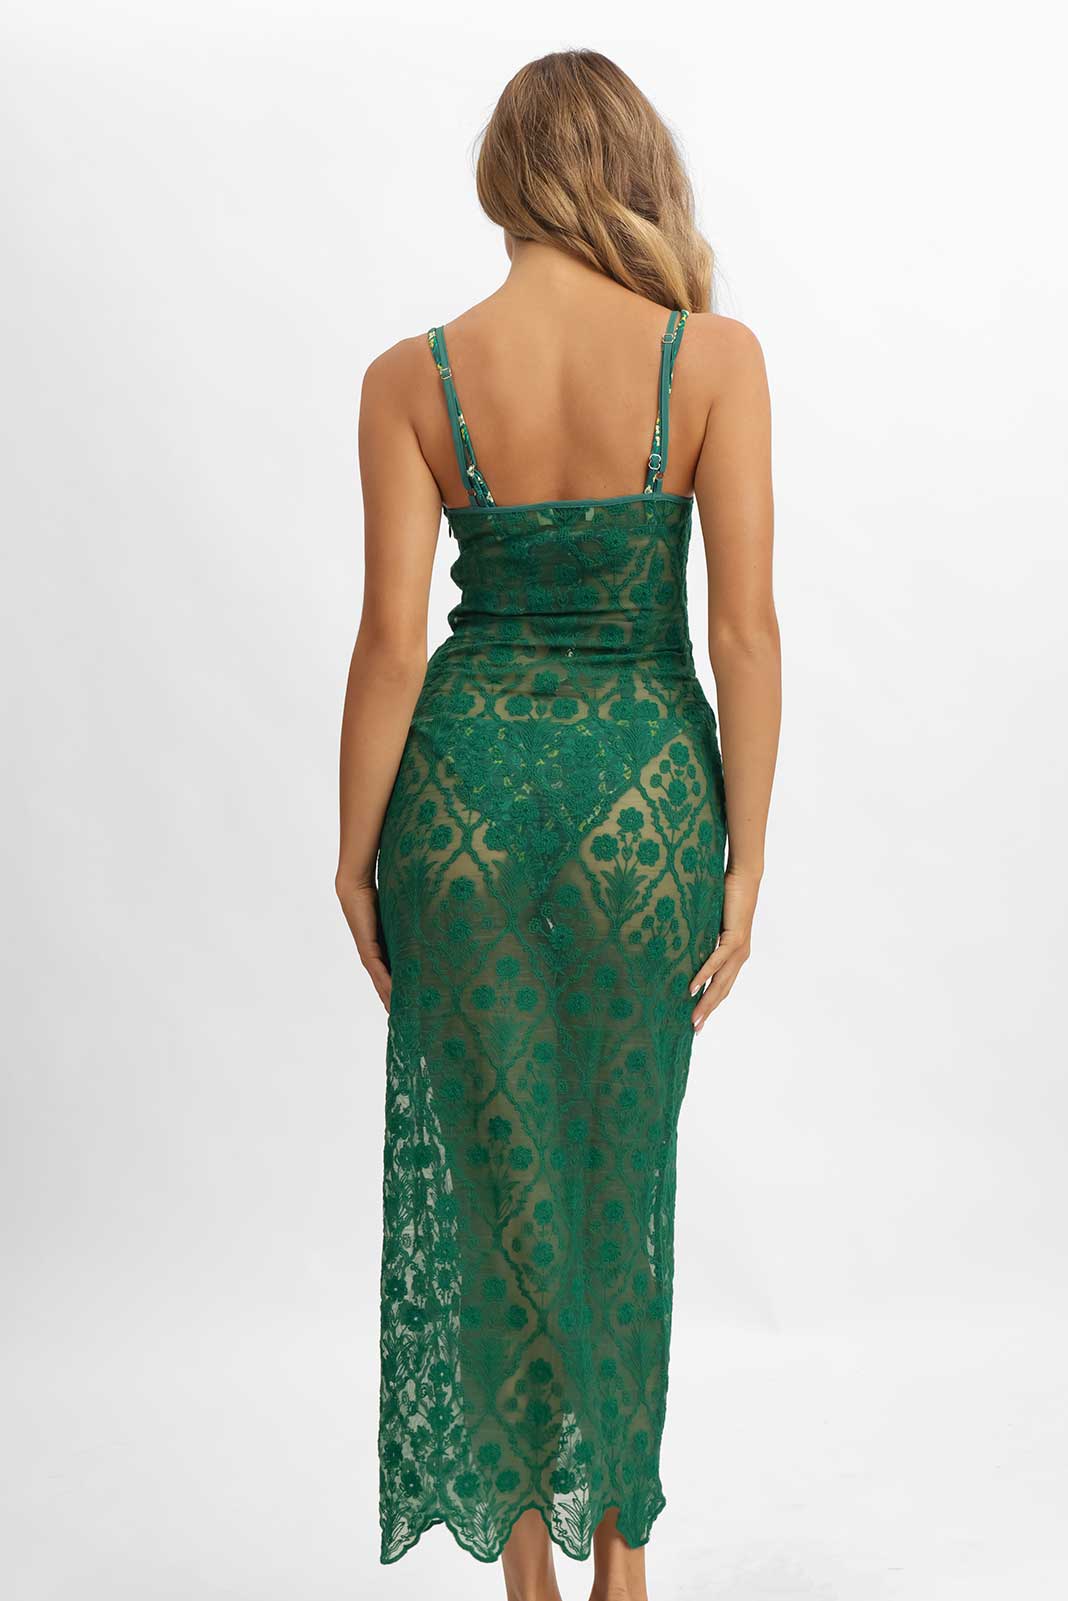 Jade Midi Ruffled Dress / Emerald Lace